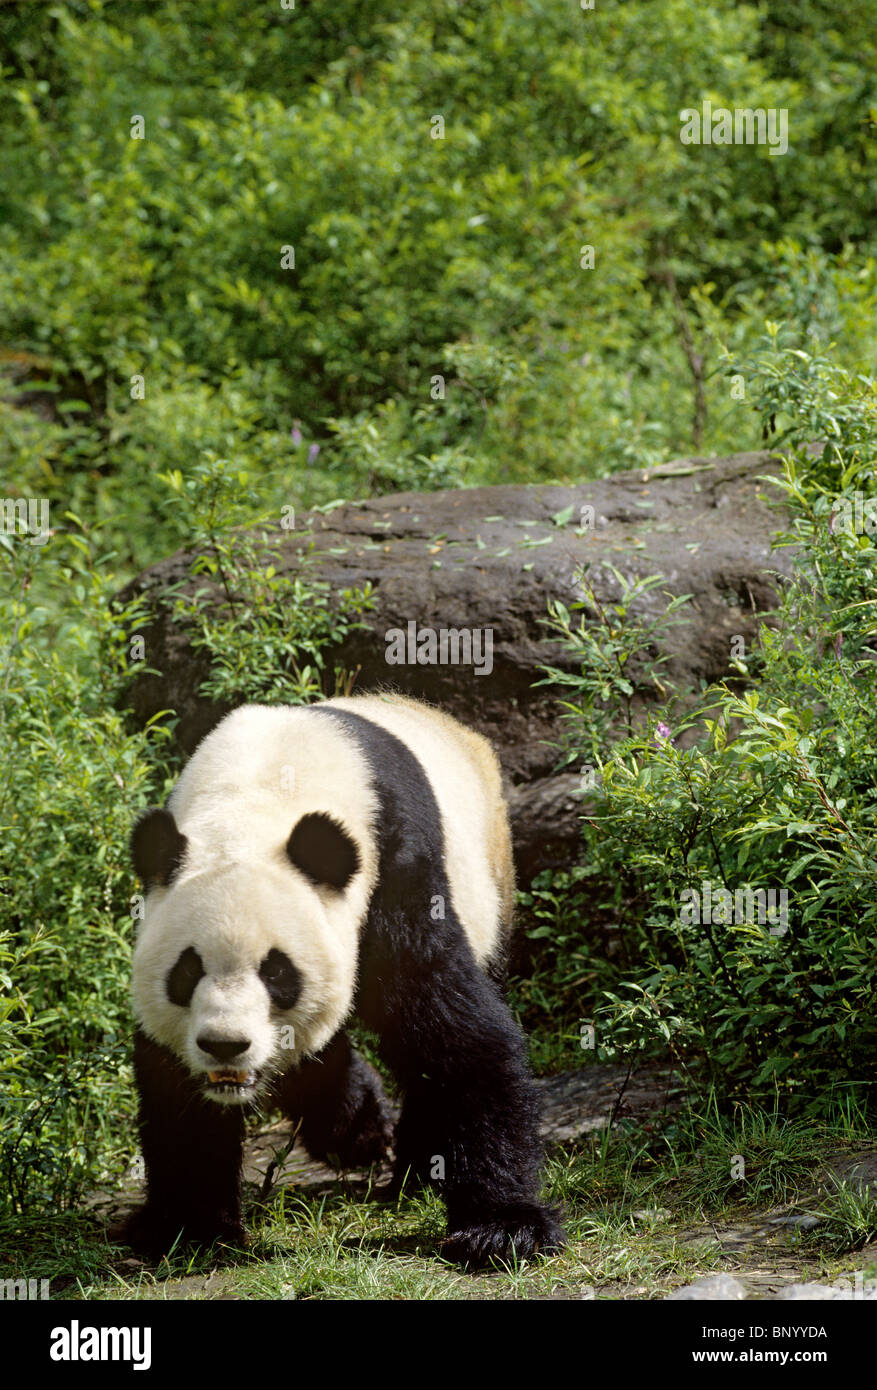 Panda gigante caminando como bear, Wolong, China, Junio Foto de stock